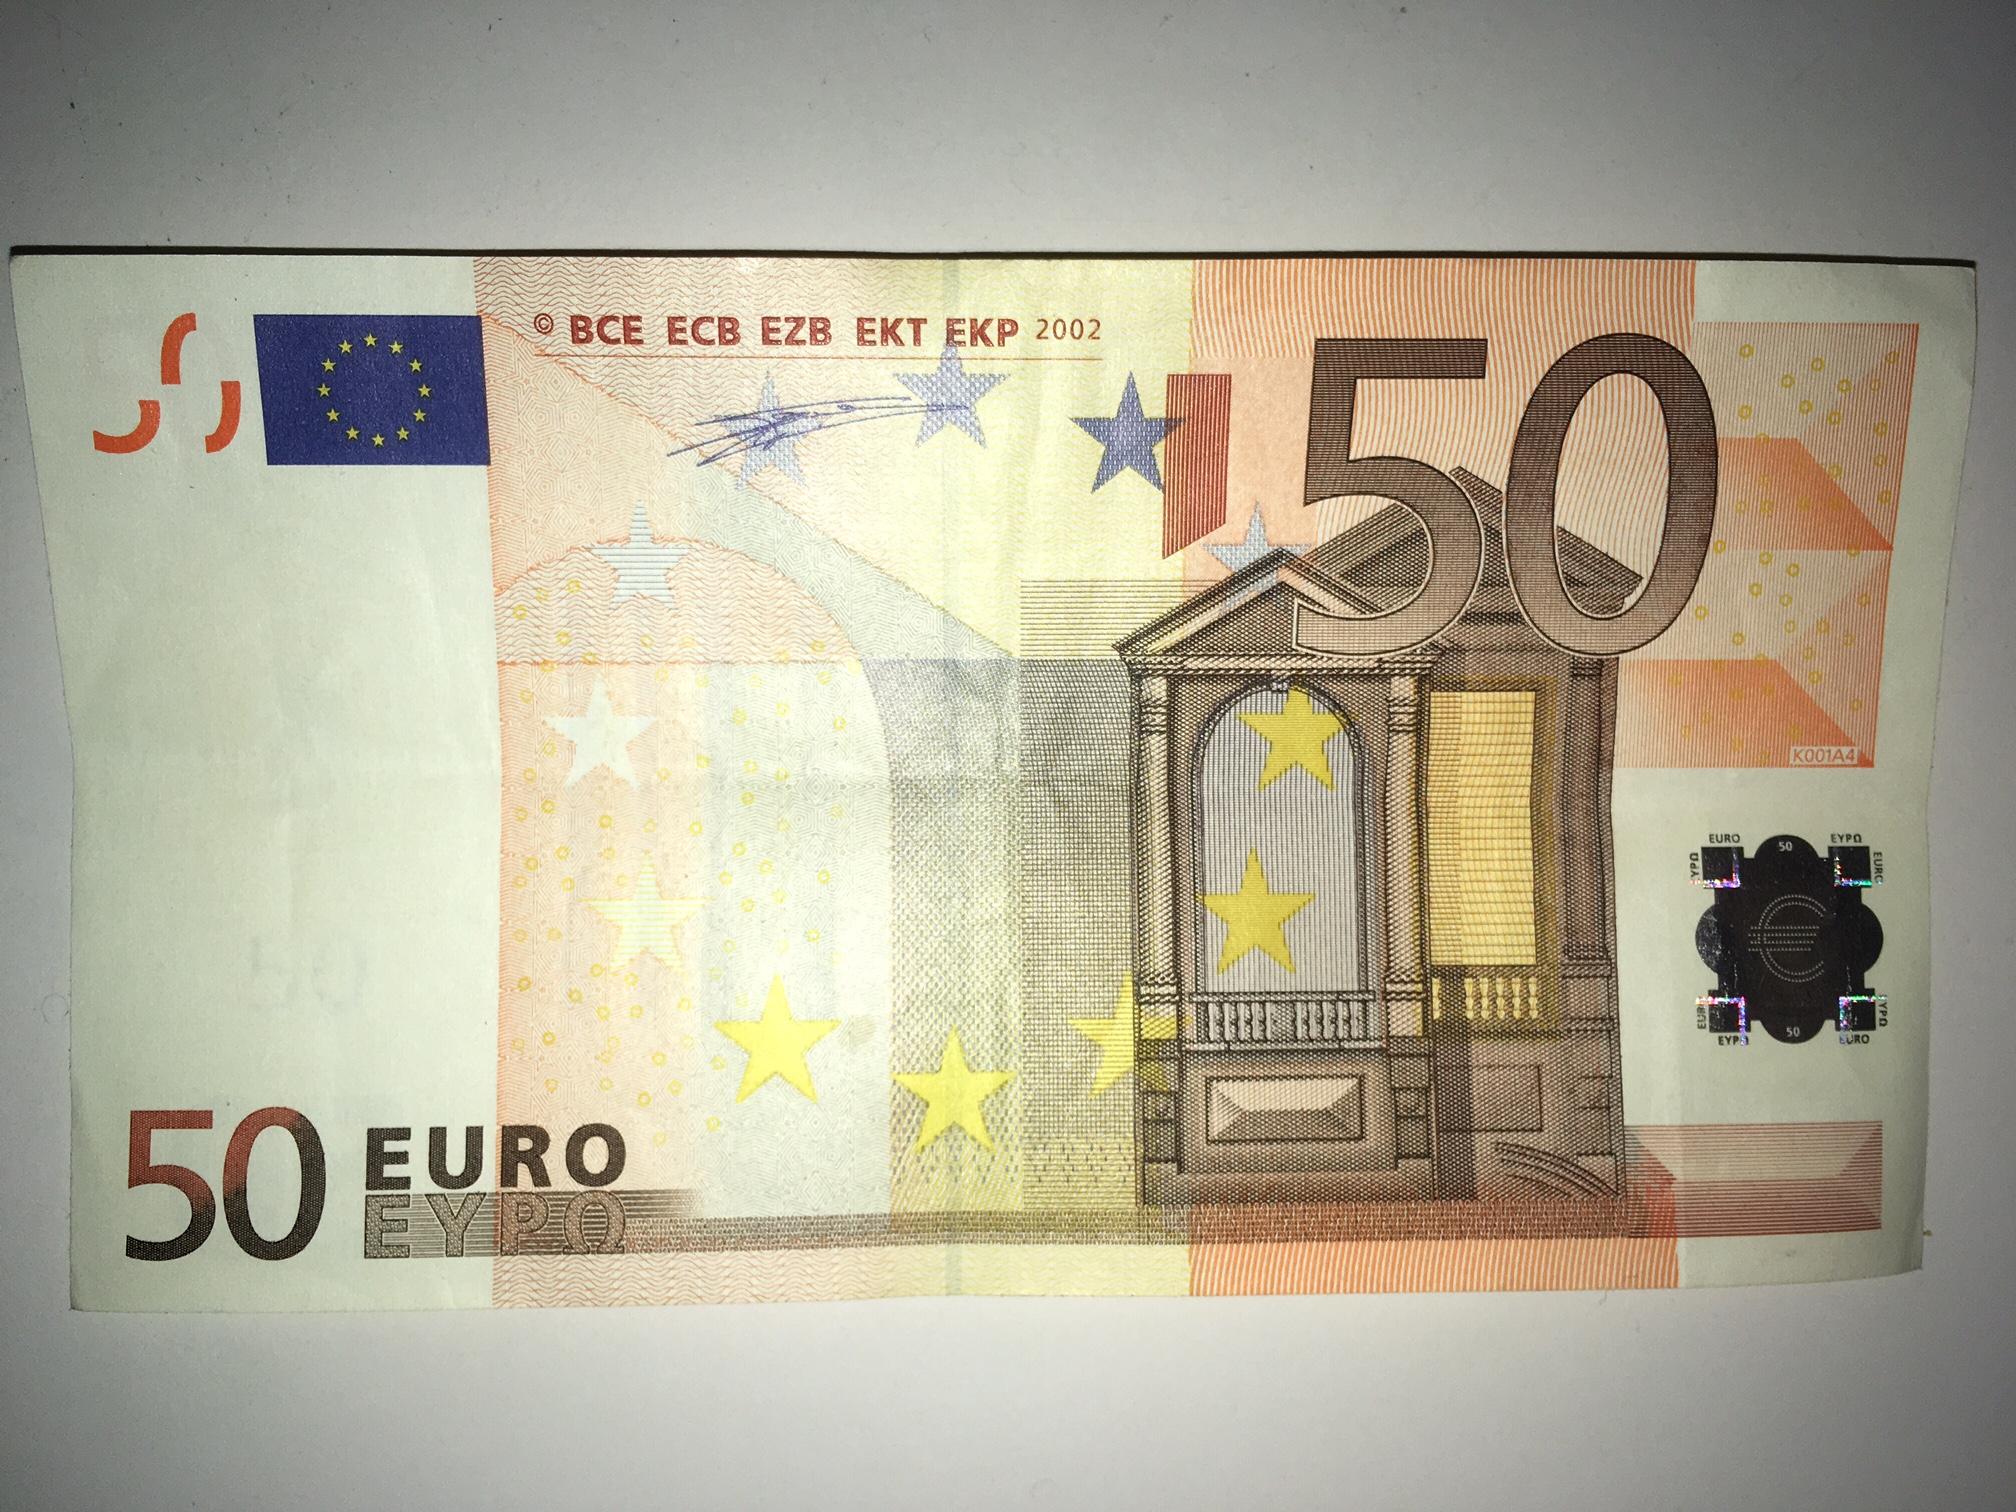 50 Евро купюра. 50 Евро 2002. 50 Евро купюра 2002. Купюра 50 евро 2002 года.